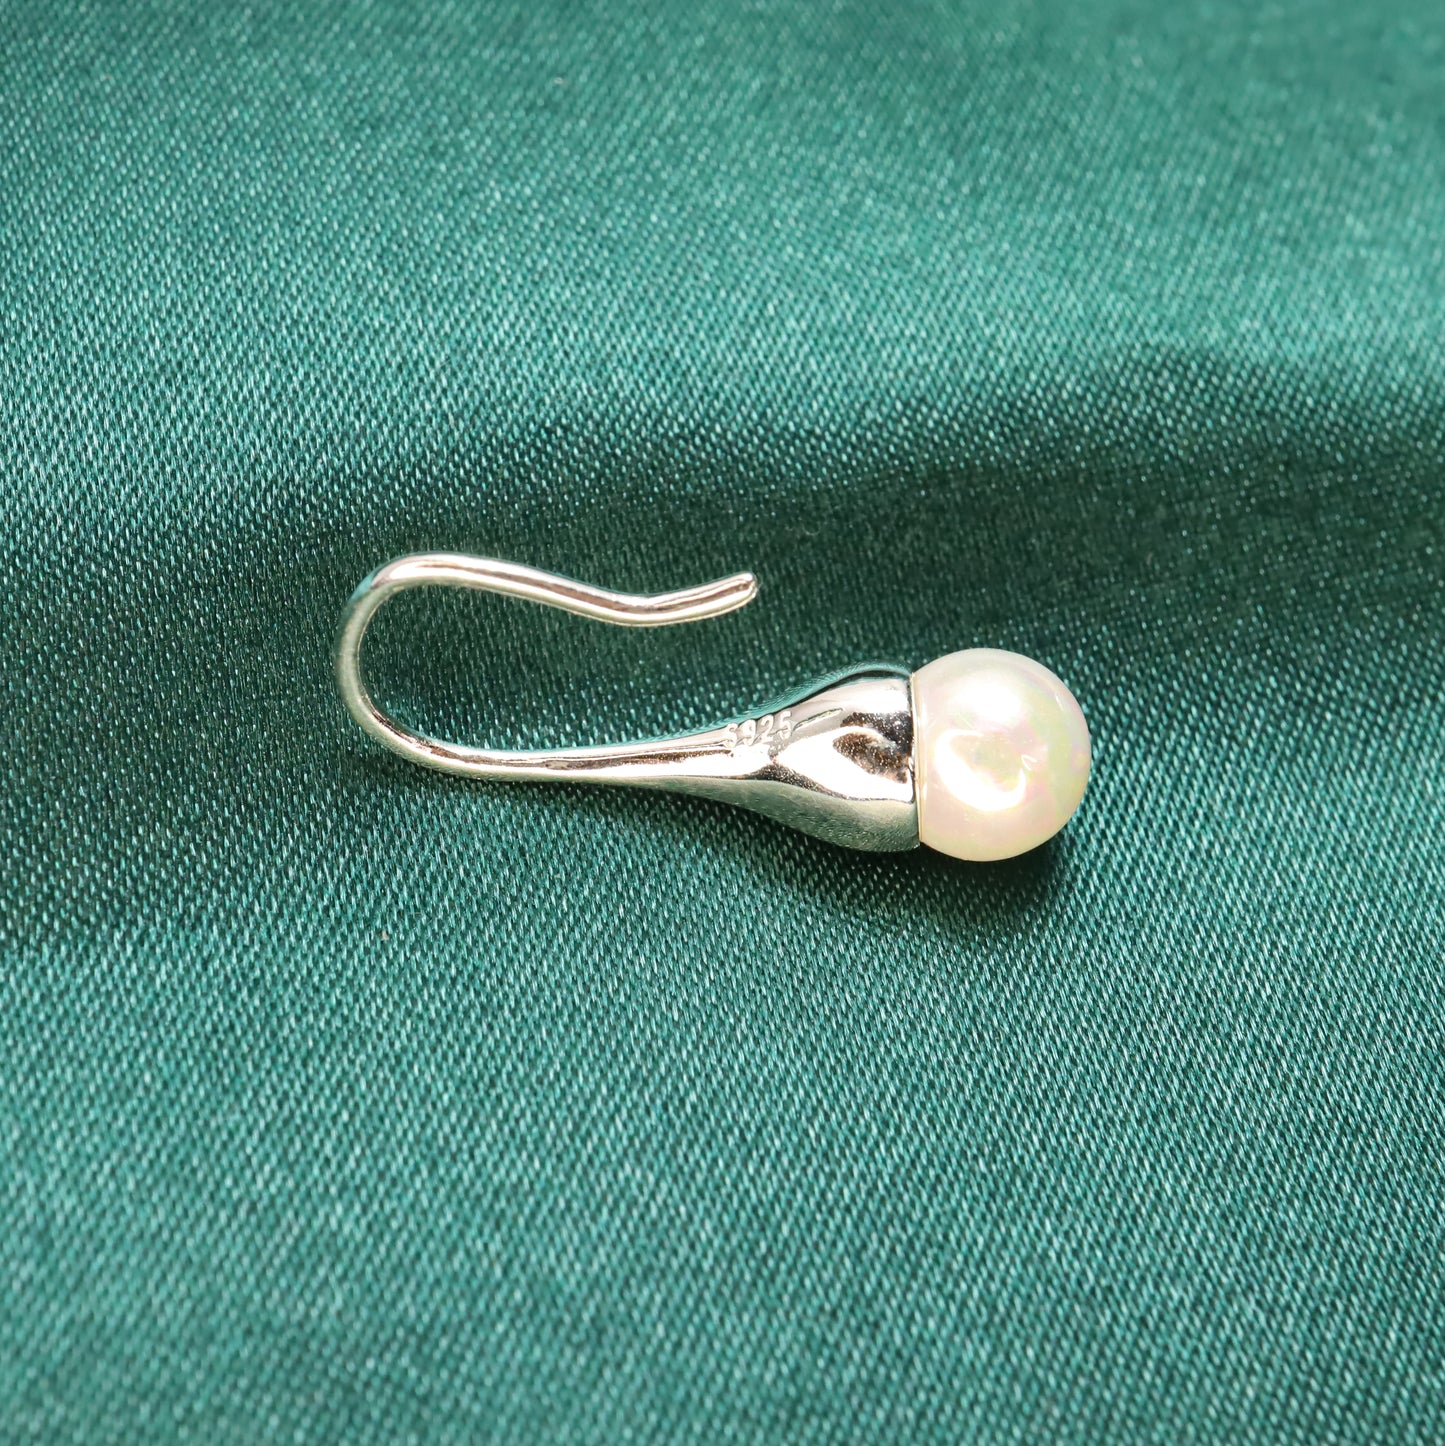 Pearl Light - Pearl & S925 Sterling Silver Hook Earrings